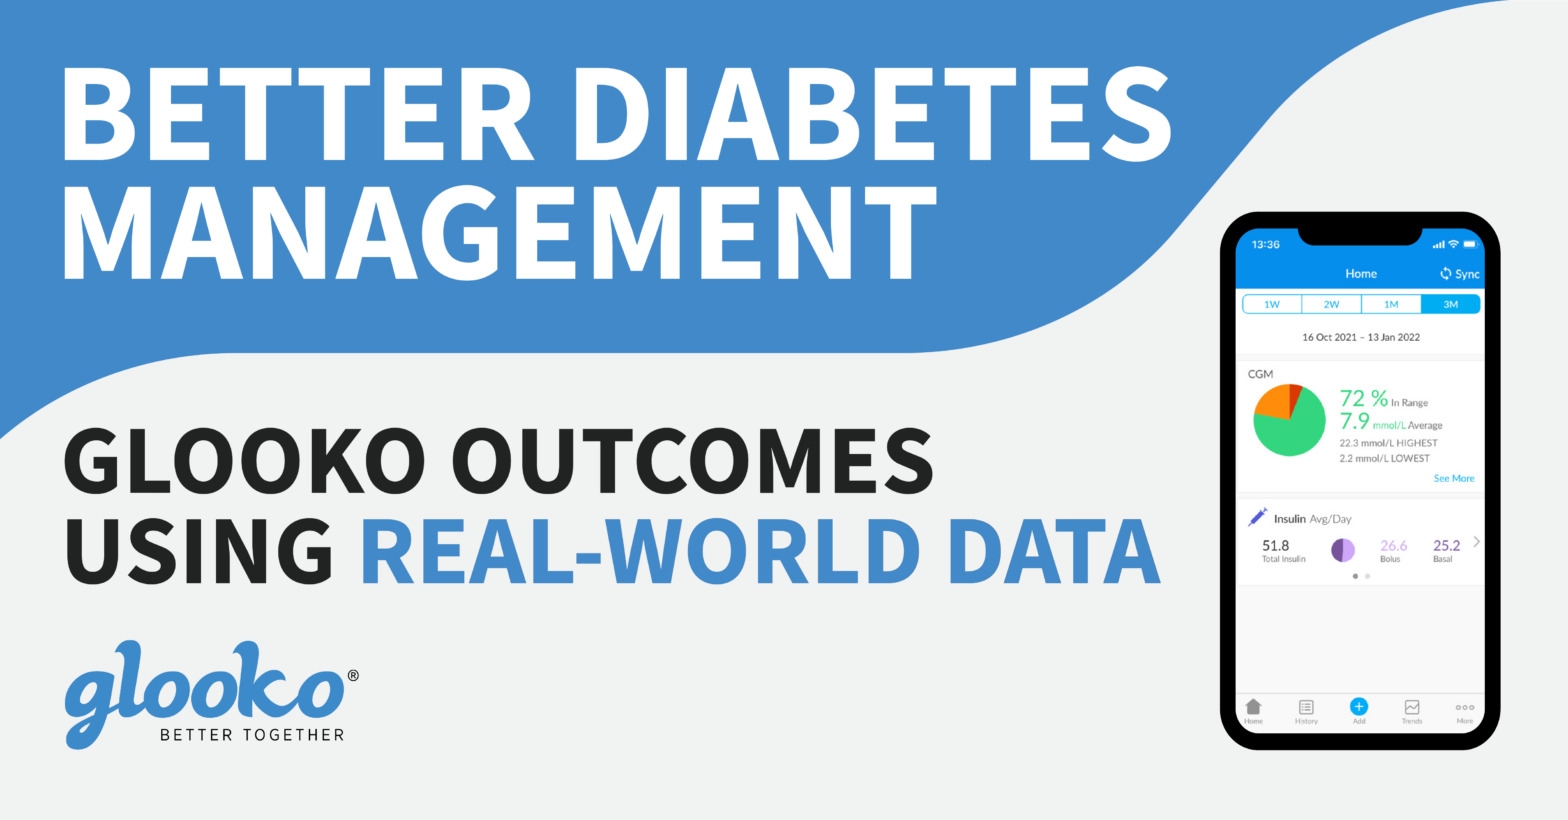 Glooko: Better Diabetes Management Infographic